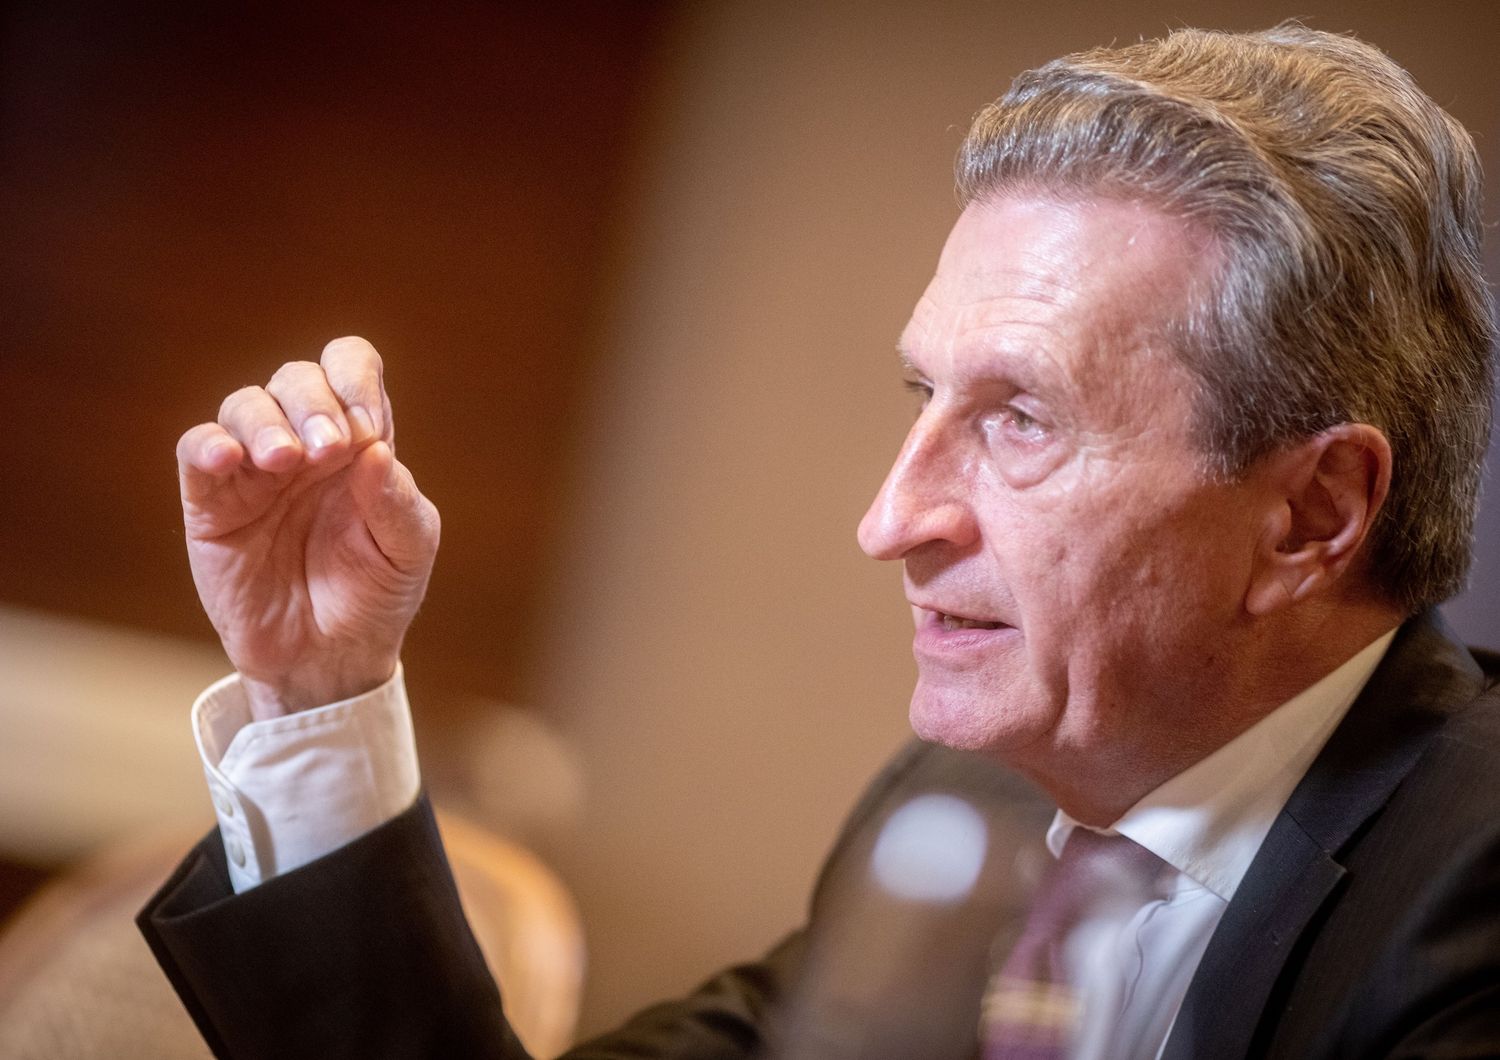 Ghunter Oettinger